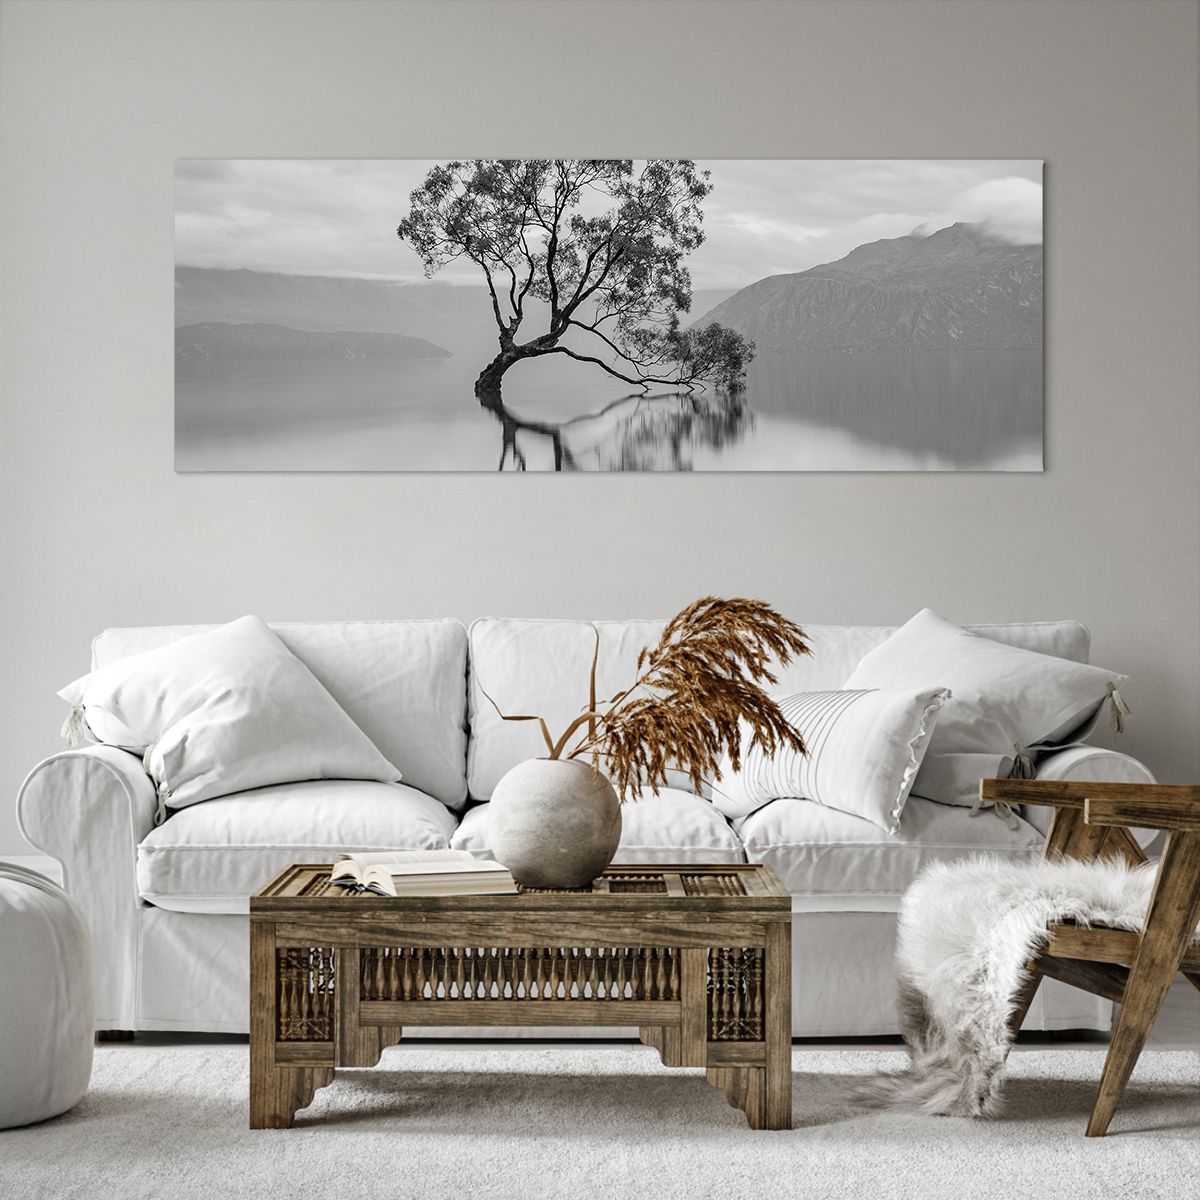 Obrazy na płótnie Krajobraz, Obrazy na płótnie Jezioro, Obrazy na płótnie Drzewo, Obrazy na płótnie Jezioro Wanaka, Obrazy na płótnie Nowa Zelandia